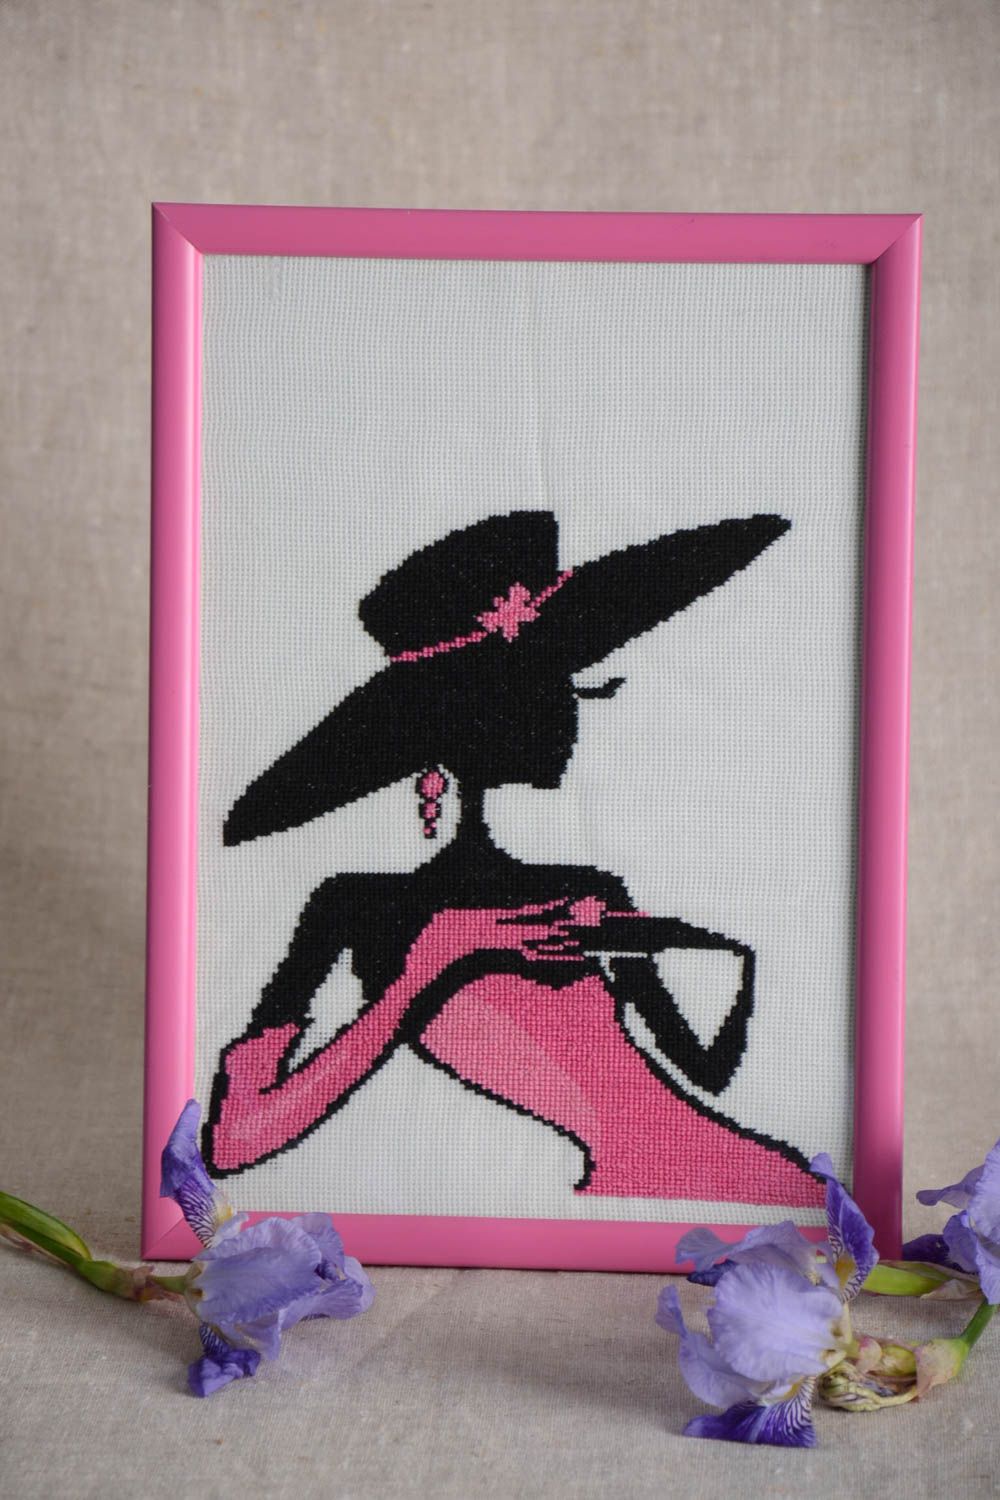 Tableau brodé dans le cadre plastique rose fait main avec femme élégante photo 1